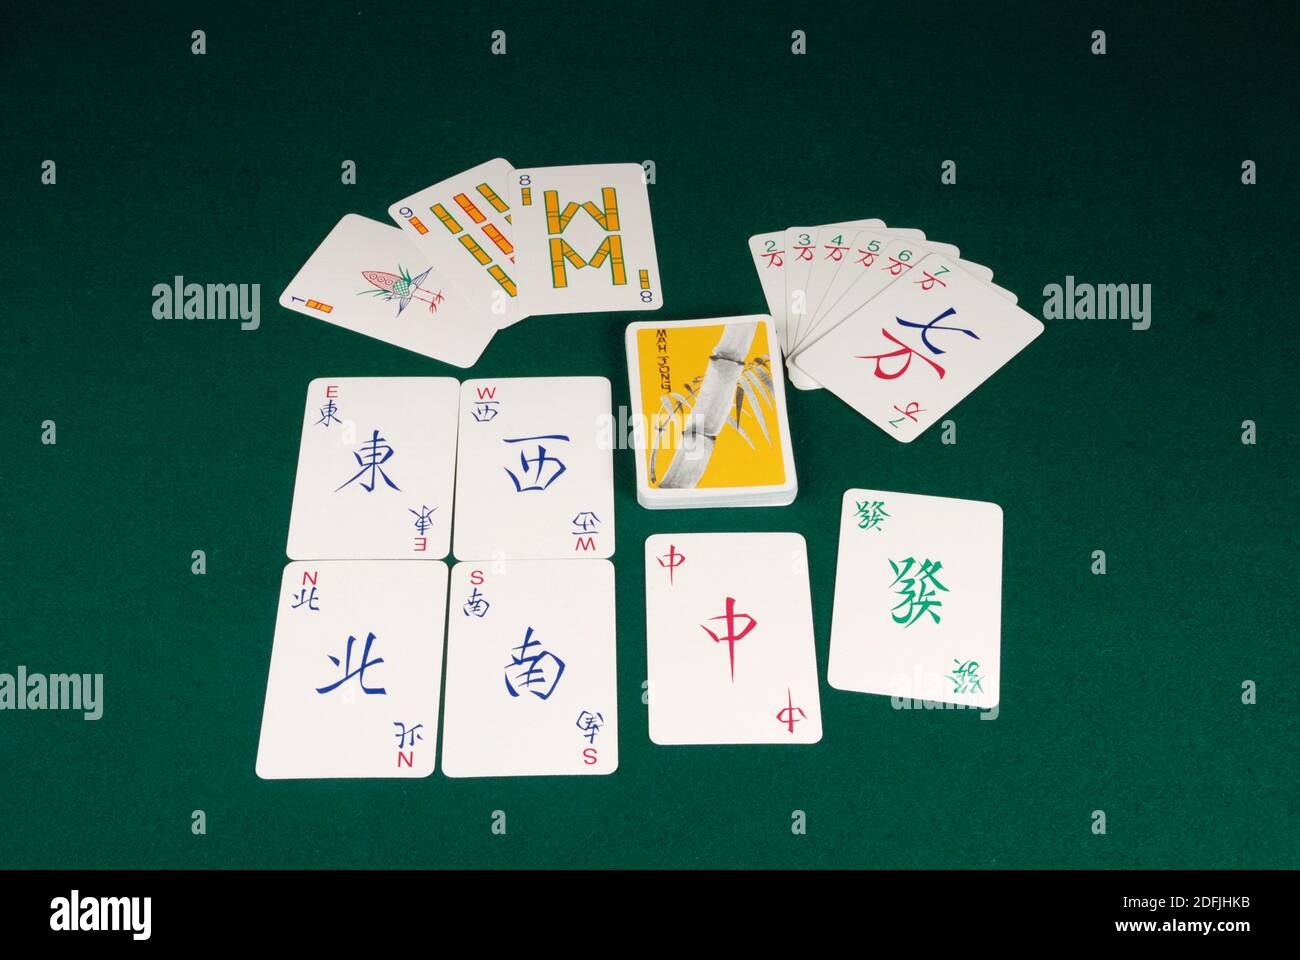 Mah-Jong, el juego de mesa chino, se puede jugar con las cartas de Mah-Jong.  Un paquete contiene 144 cartas que representan las fichas de Mah-Jong  Fotografía de stock - Alamy